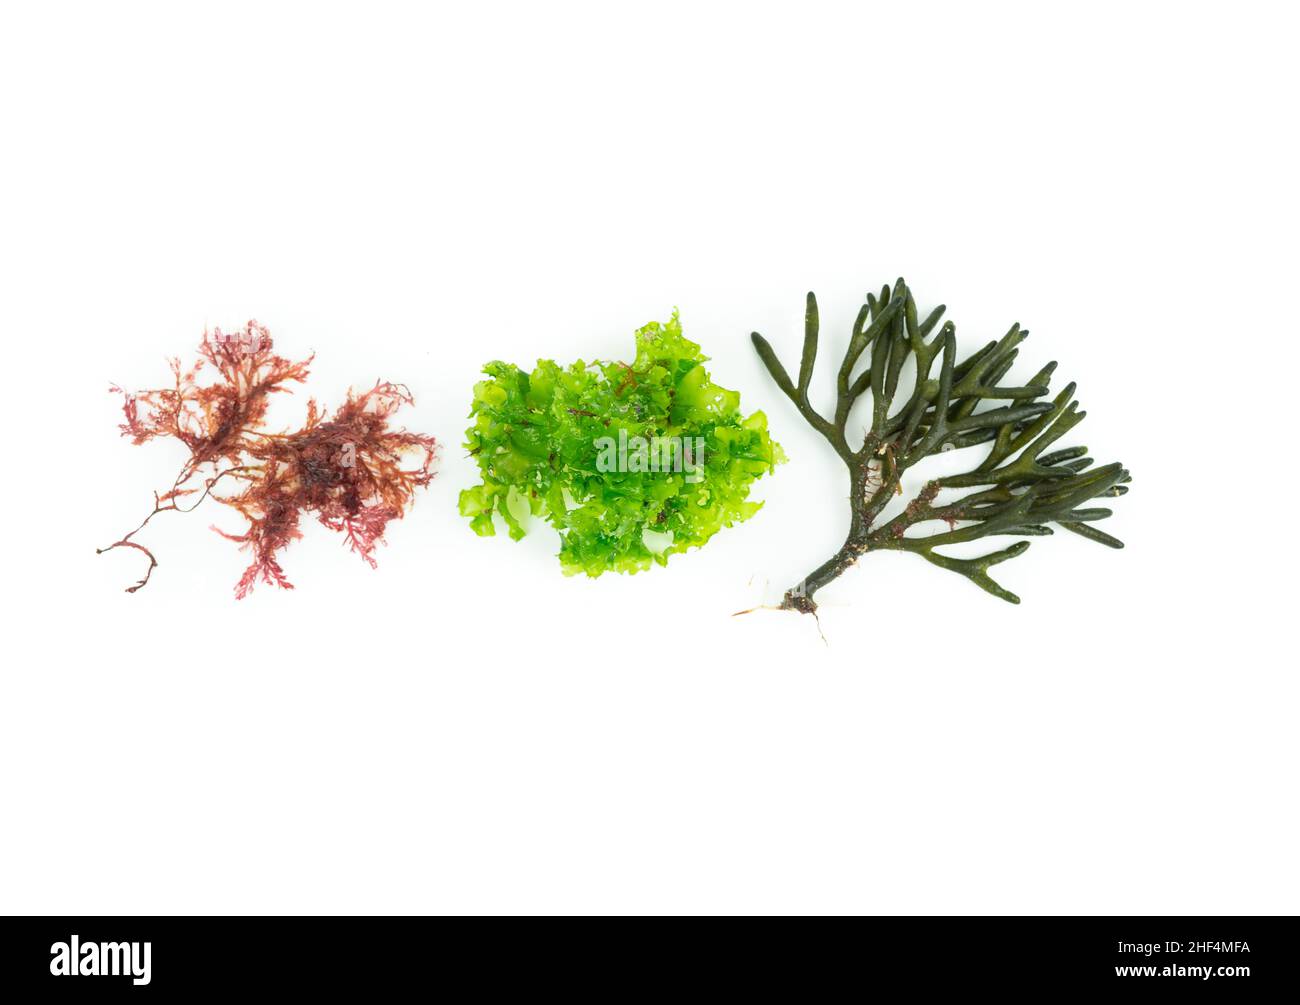 Tre diverse specie di alghe su sfondo bianco. Codium tomentosum, Gelidium, Ulva lactuca. Vista dall'alto. Foto Stock